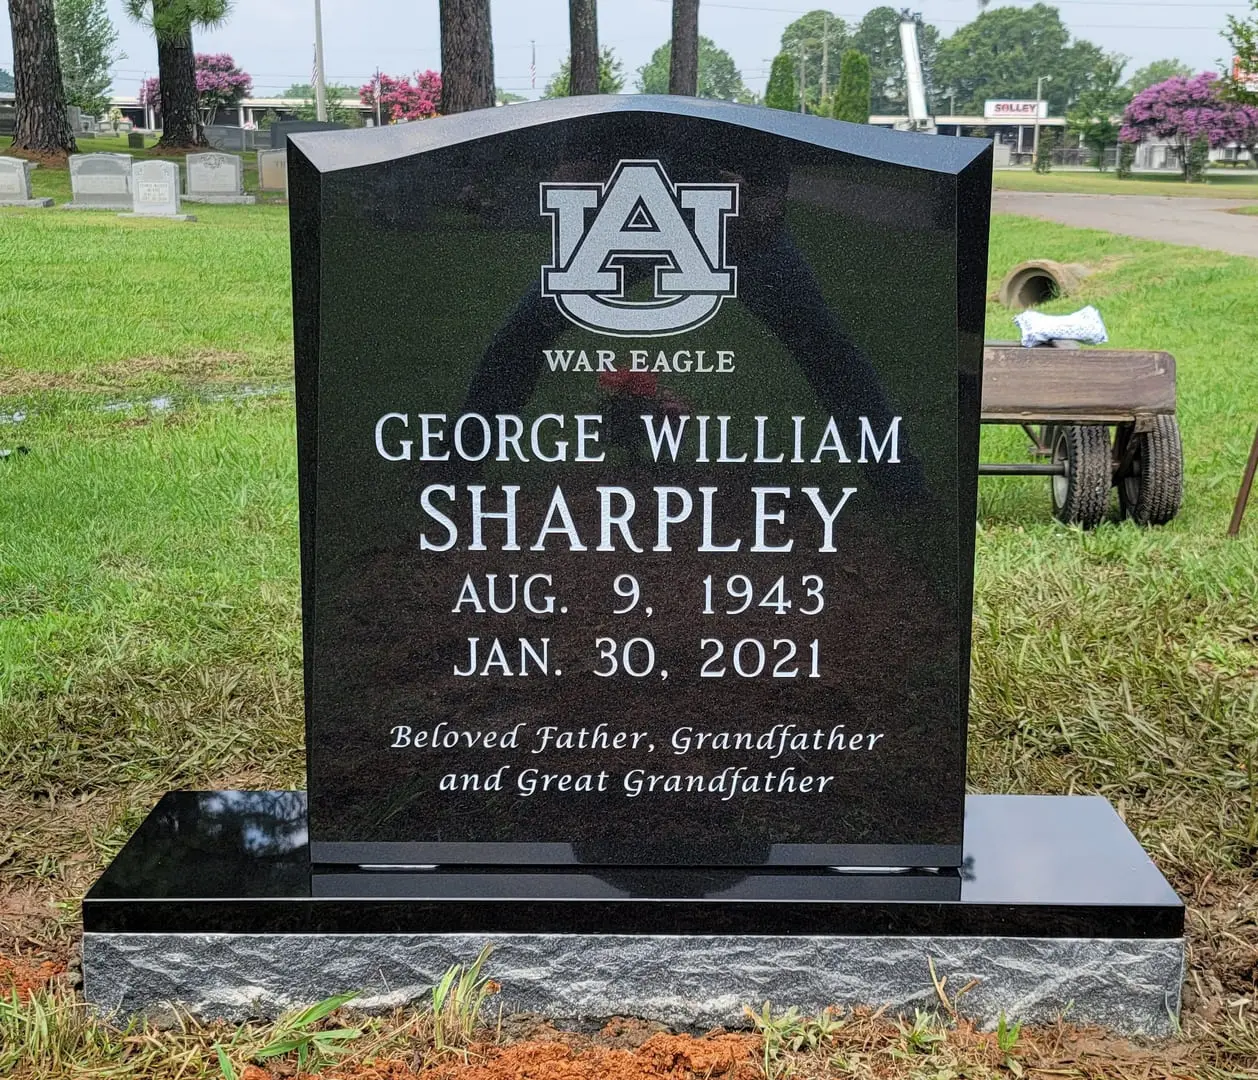 A memorial slab for George William Sharpley